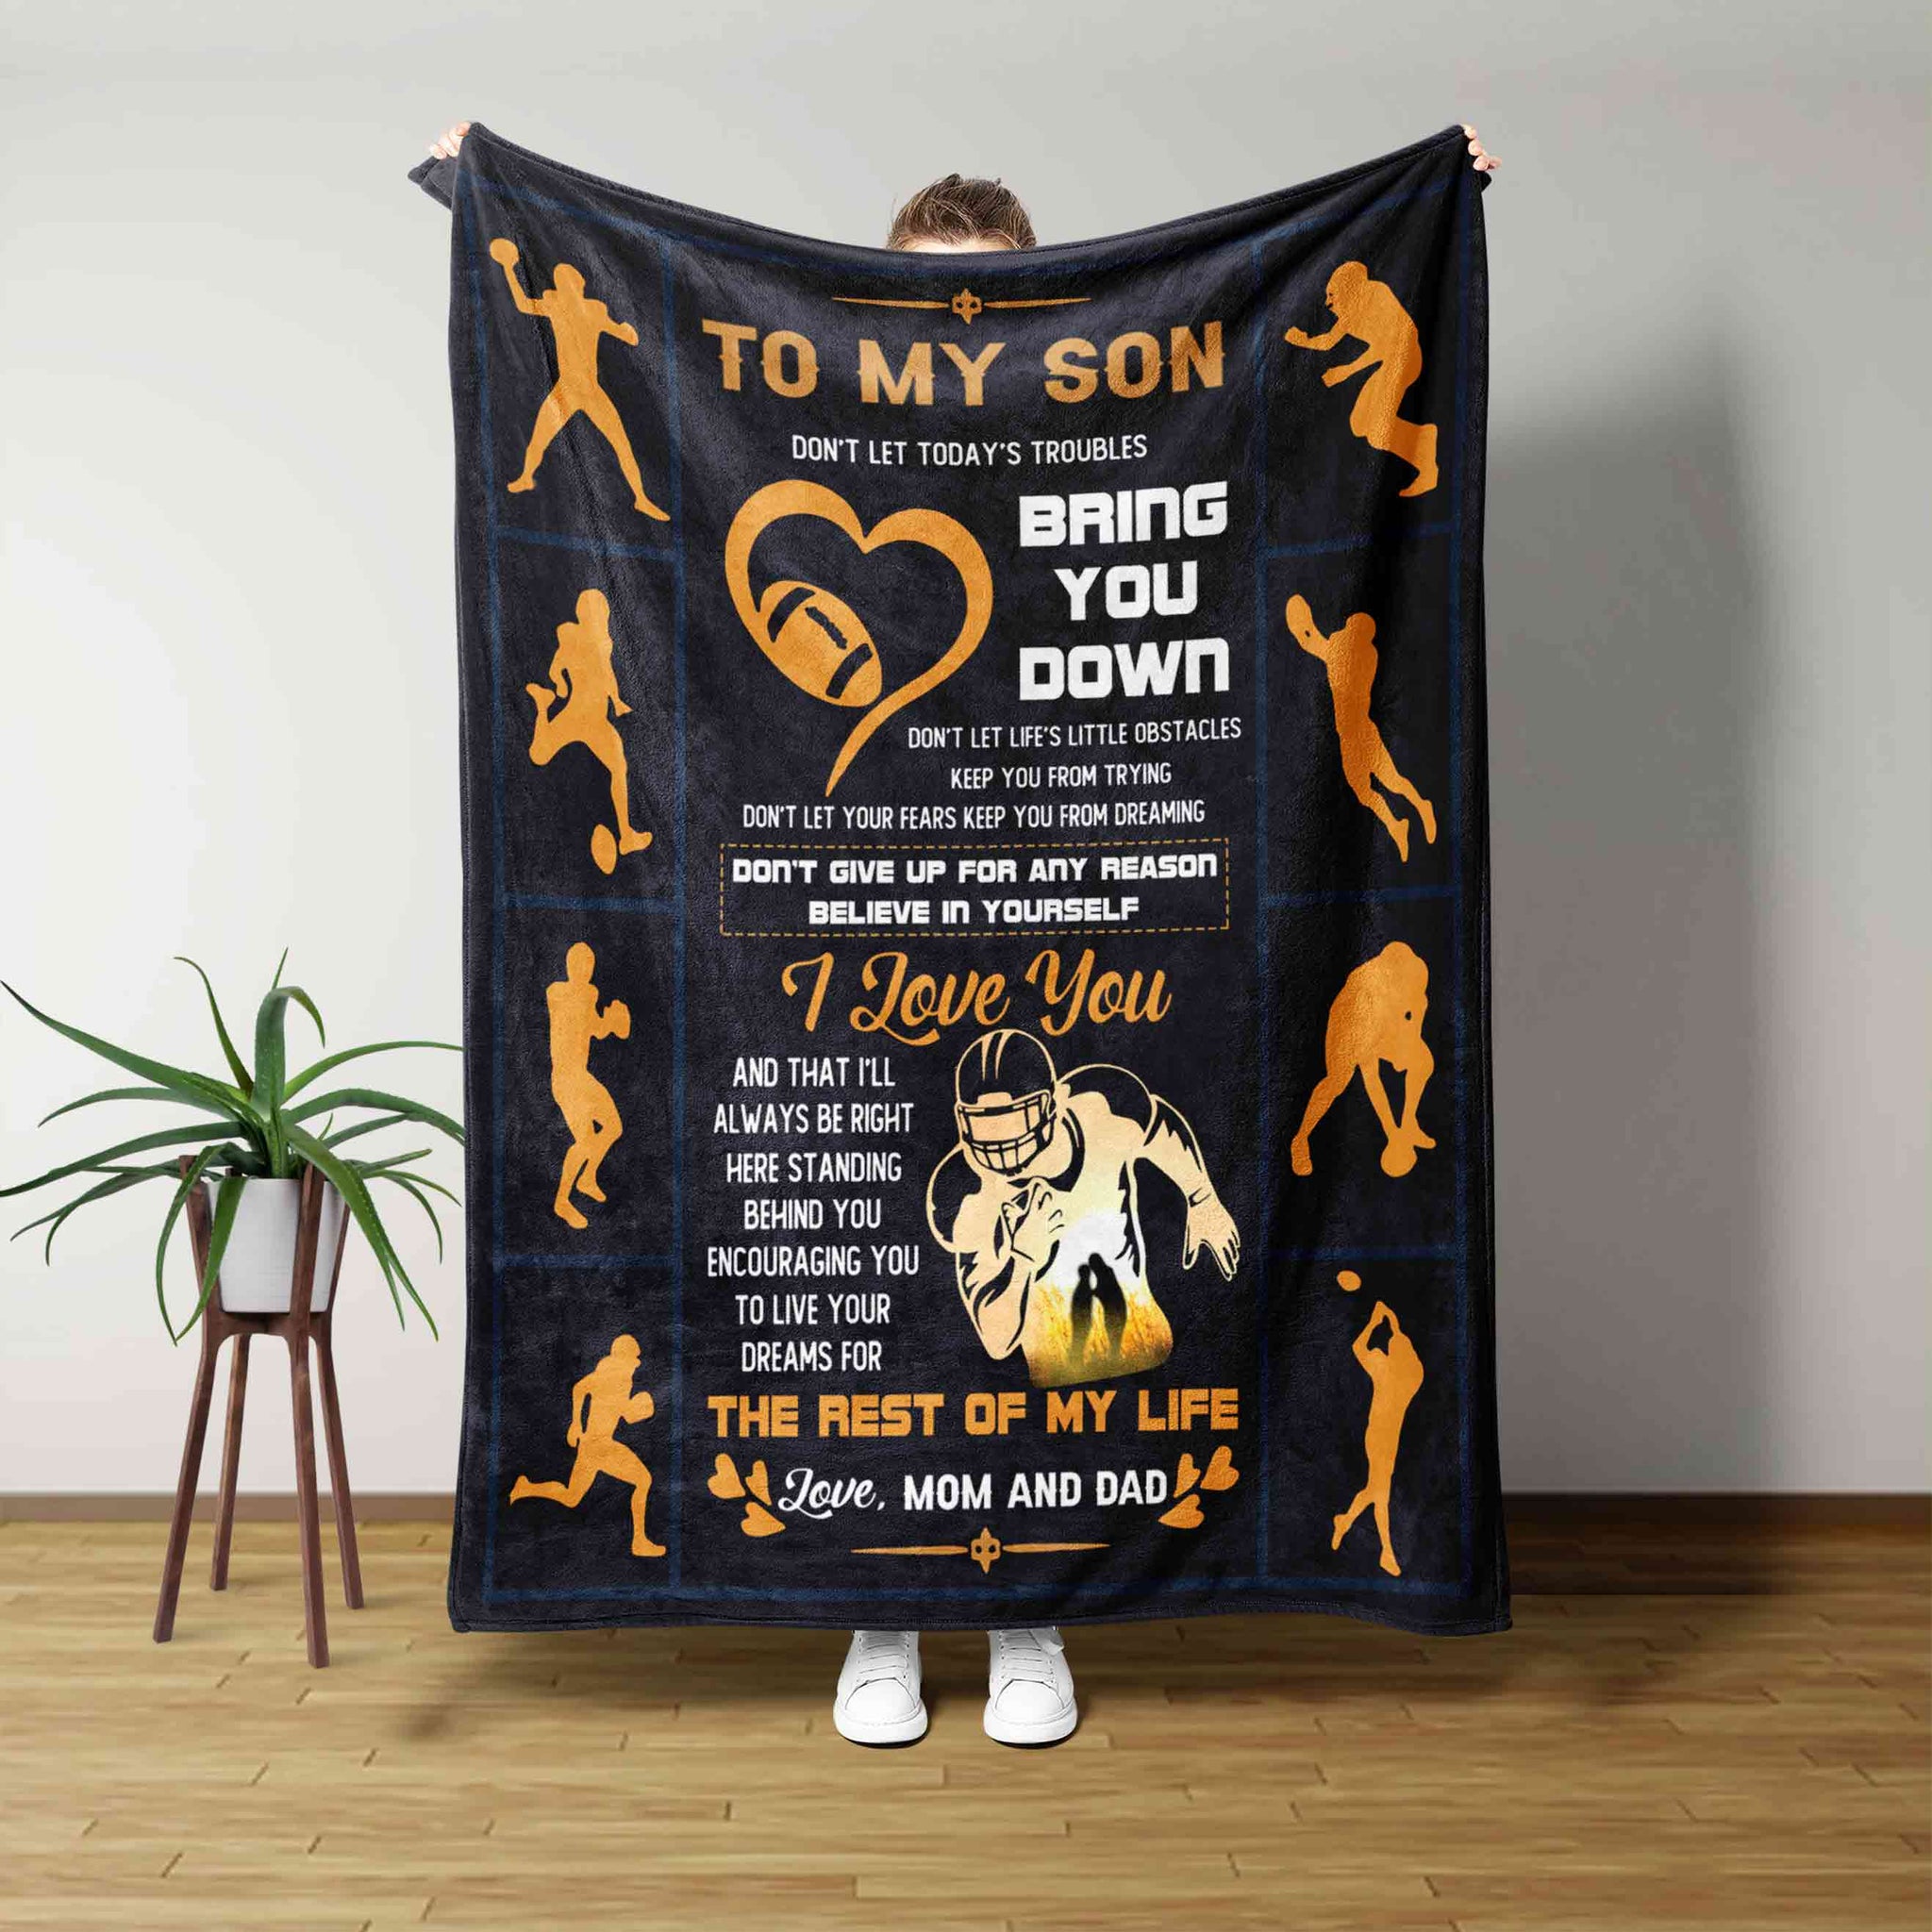 To My Son Blanket, Football Blanket, Sport Blanket, Son Blanket, Custom Name Blanket, Family Blanket, Gift Blanket